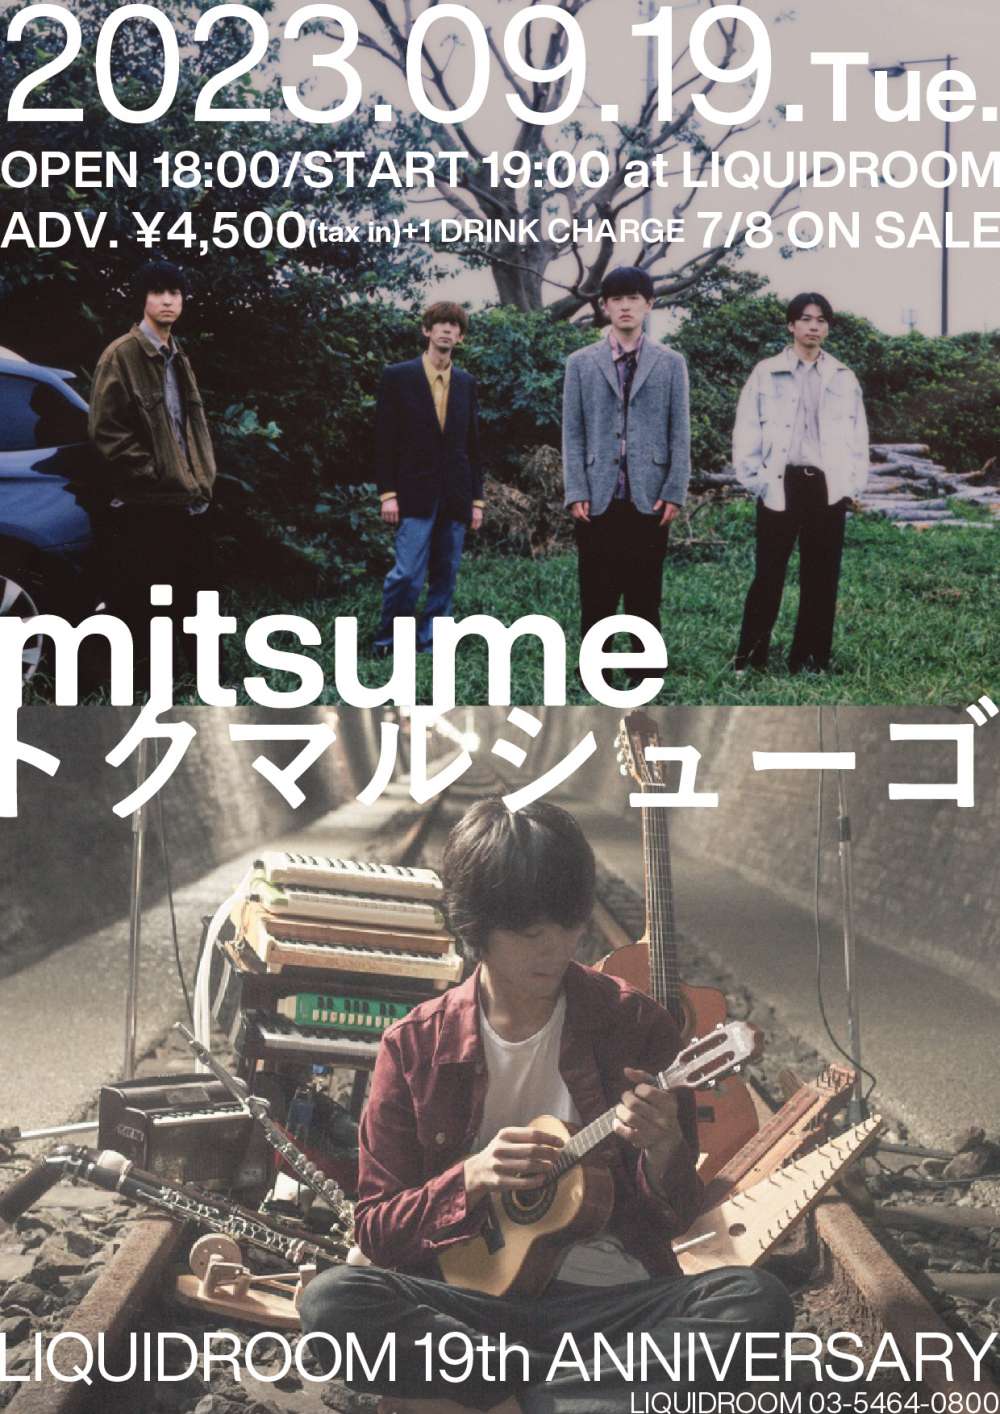 「LIQUIDROOM 19th ANNIVERSARY mitsume / トクマルシューゴ 」のチケットが一般発売開始しました。